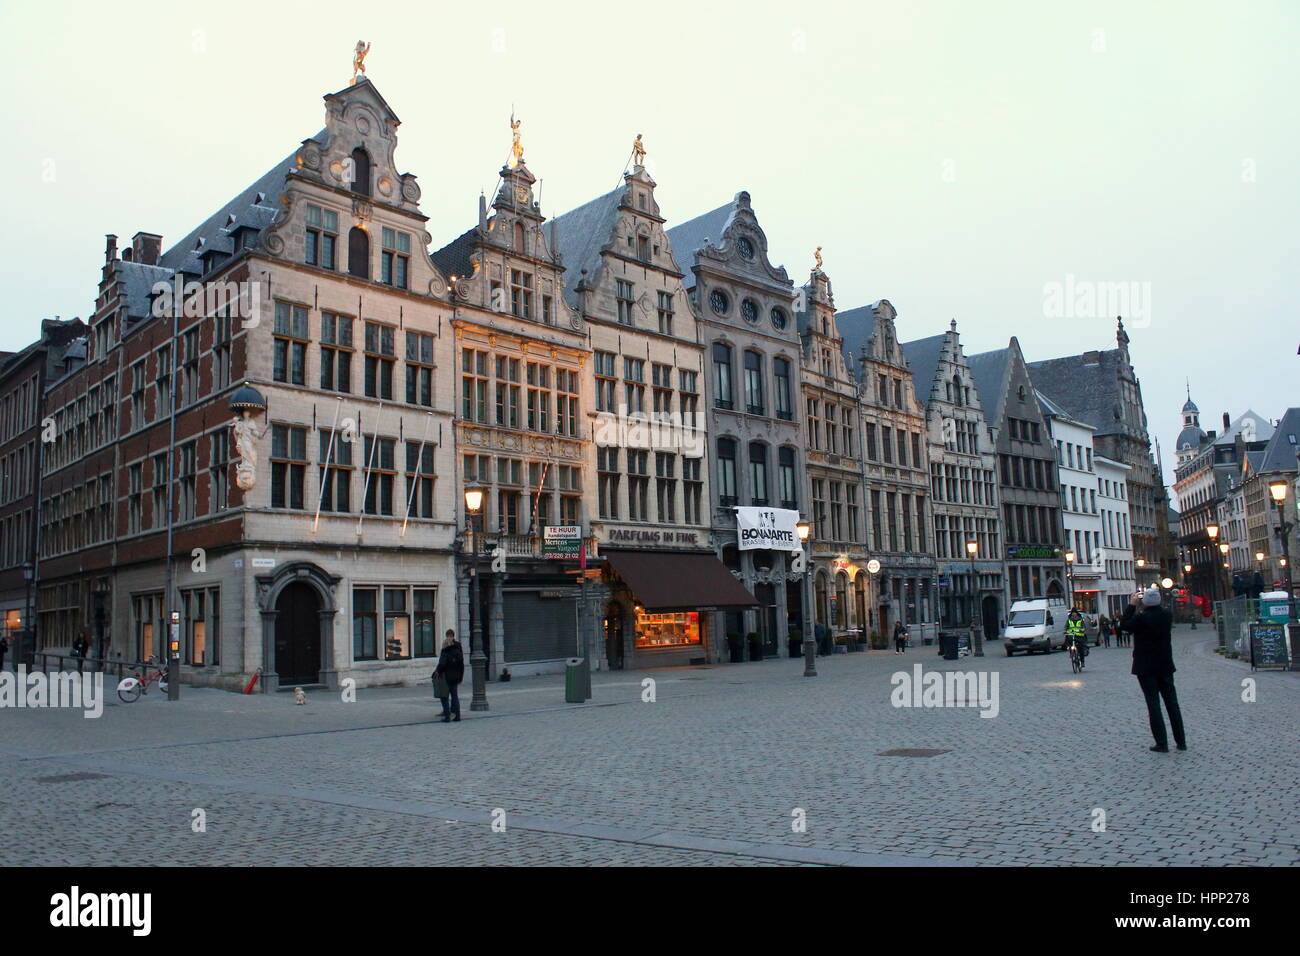 Alten Monental Zunfthäuser am Grote Markt (großer Marktplatz), Antwerpen, Belgien Stockfoto